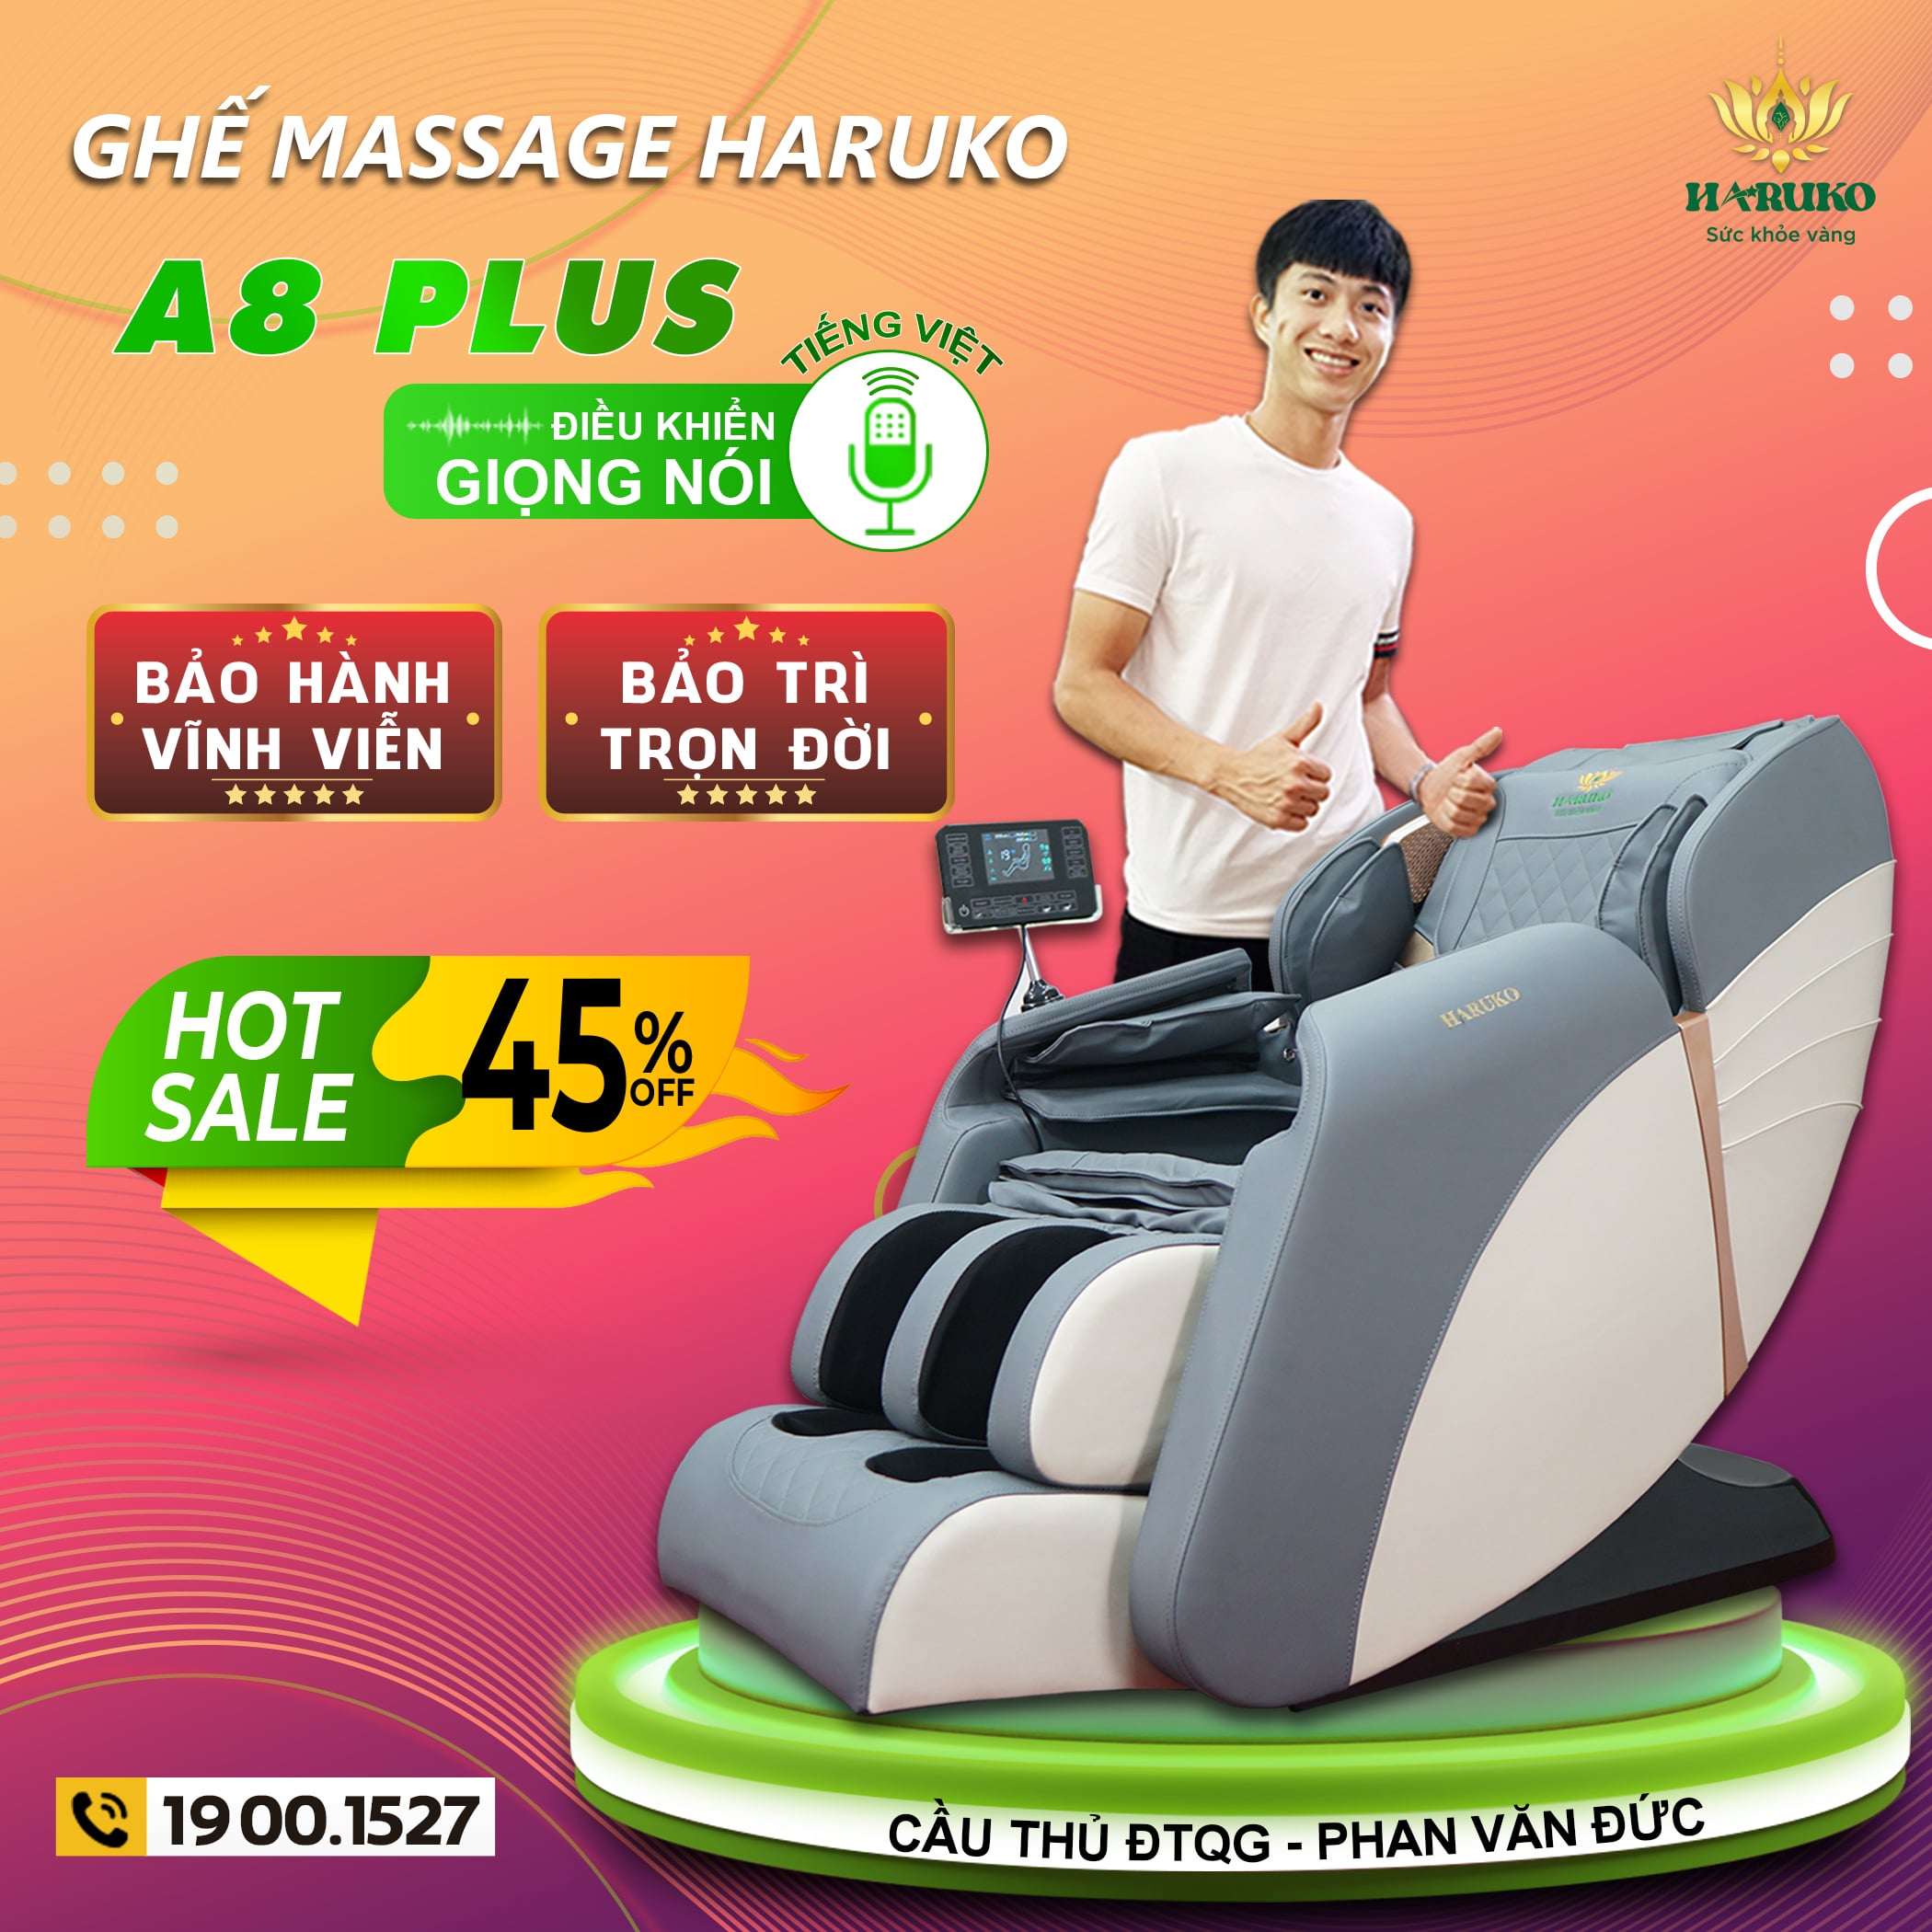 Haruko-A8 Plus với những tính năng thông minh,hiện đại luôn là lựa chọn tuyệt vời dành cho người dùng